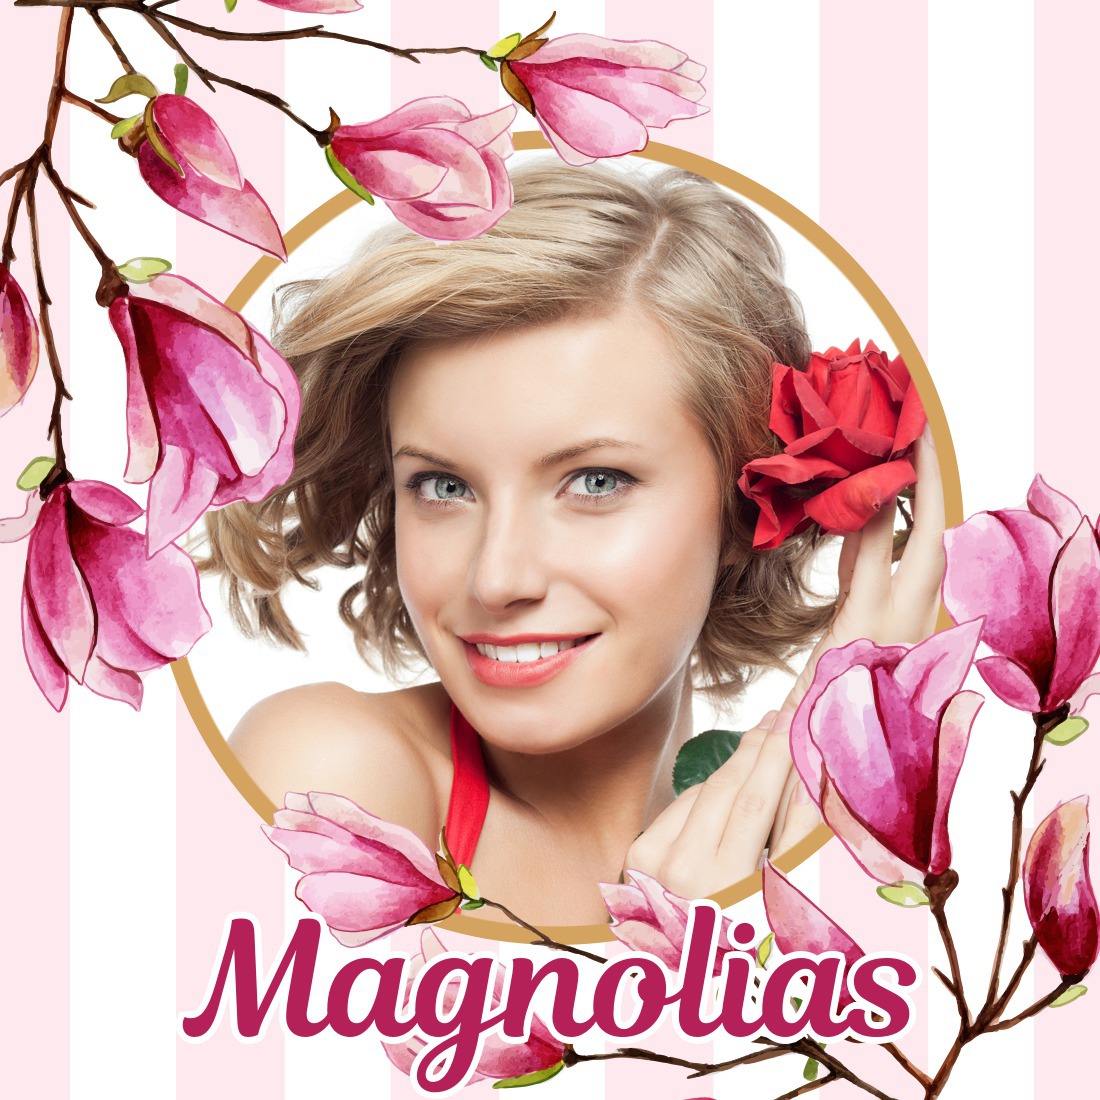 Magnolias Montaje fotografico